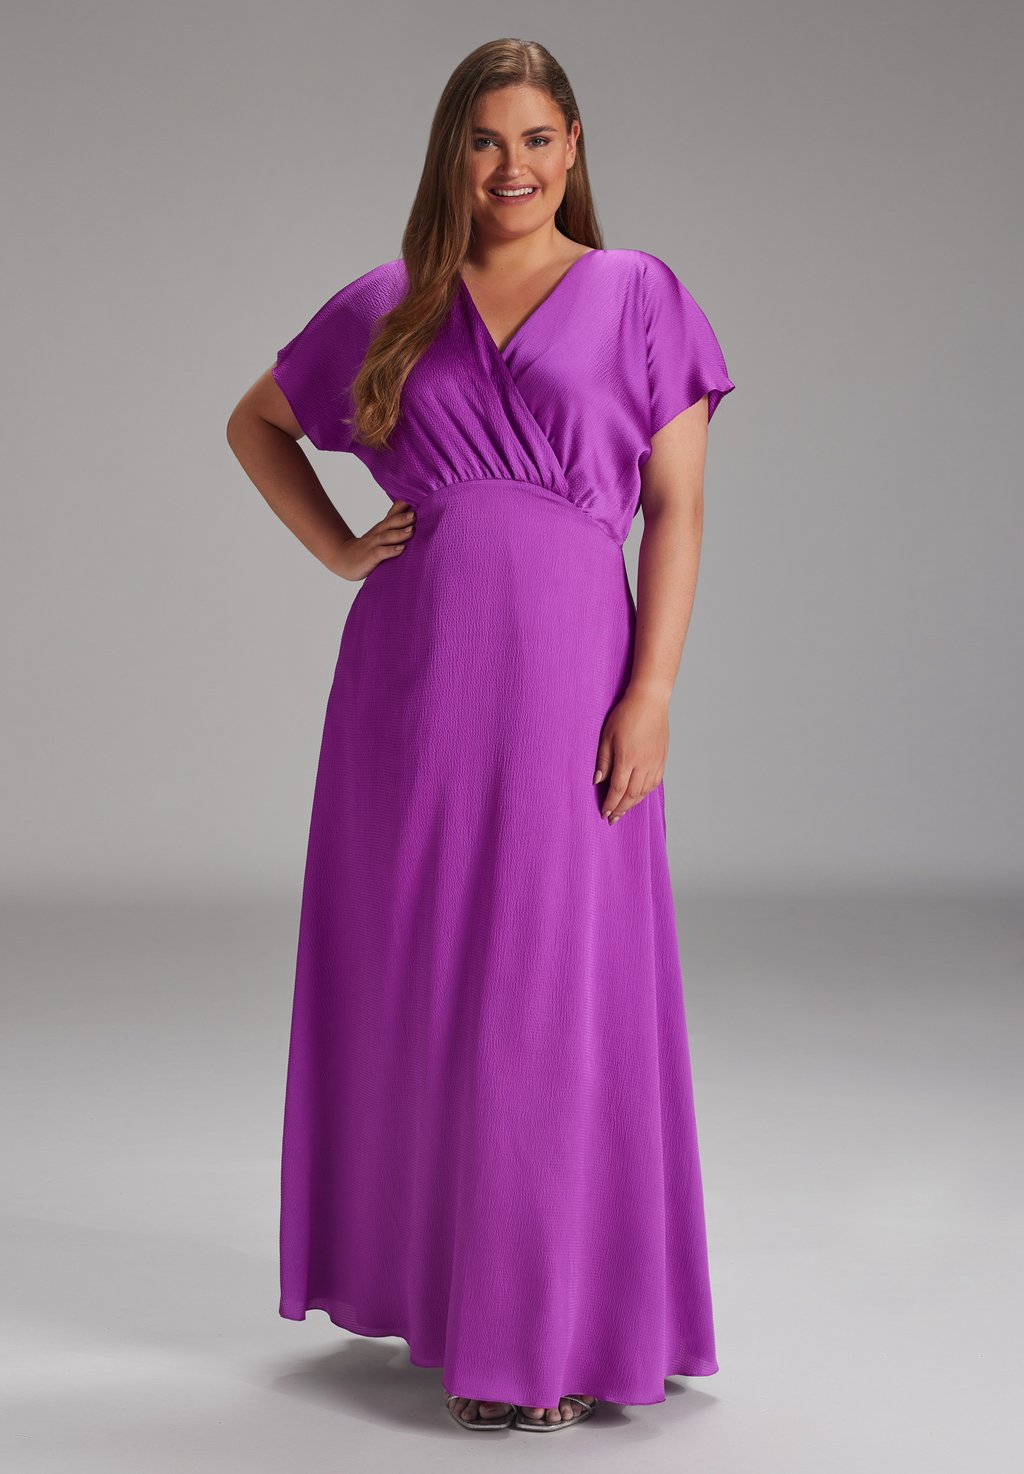 Длинное платье LANGES AUS STRUKTUR Swing Curve, фиолетовый